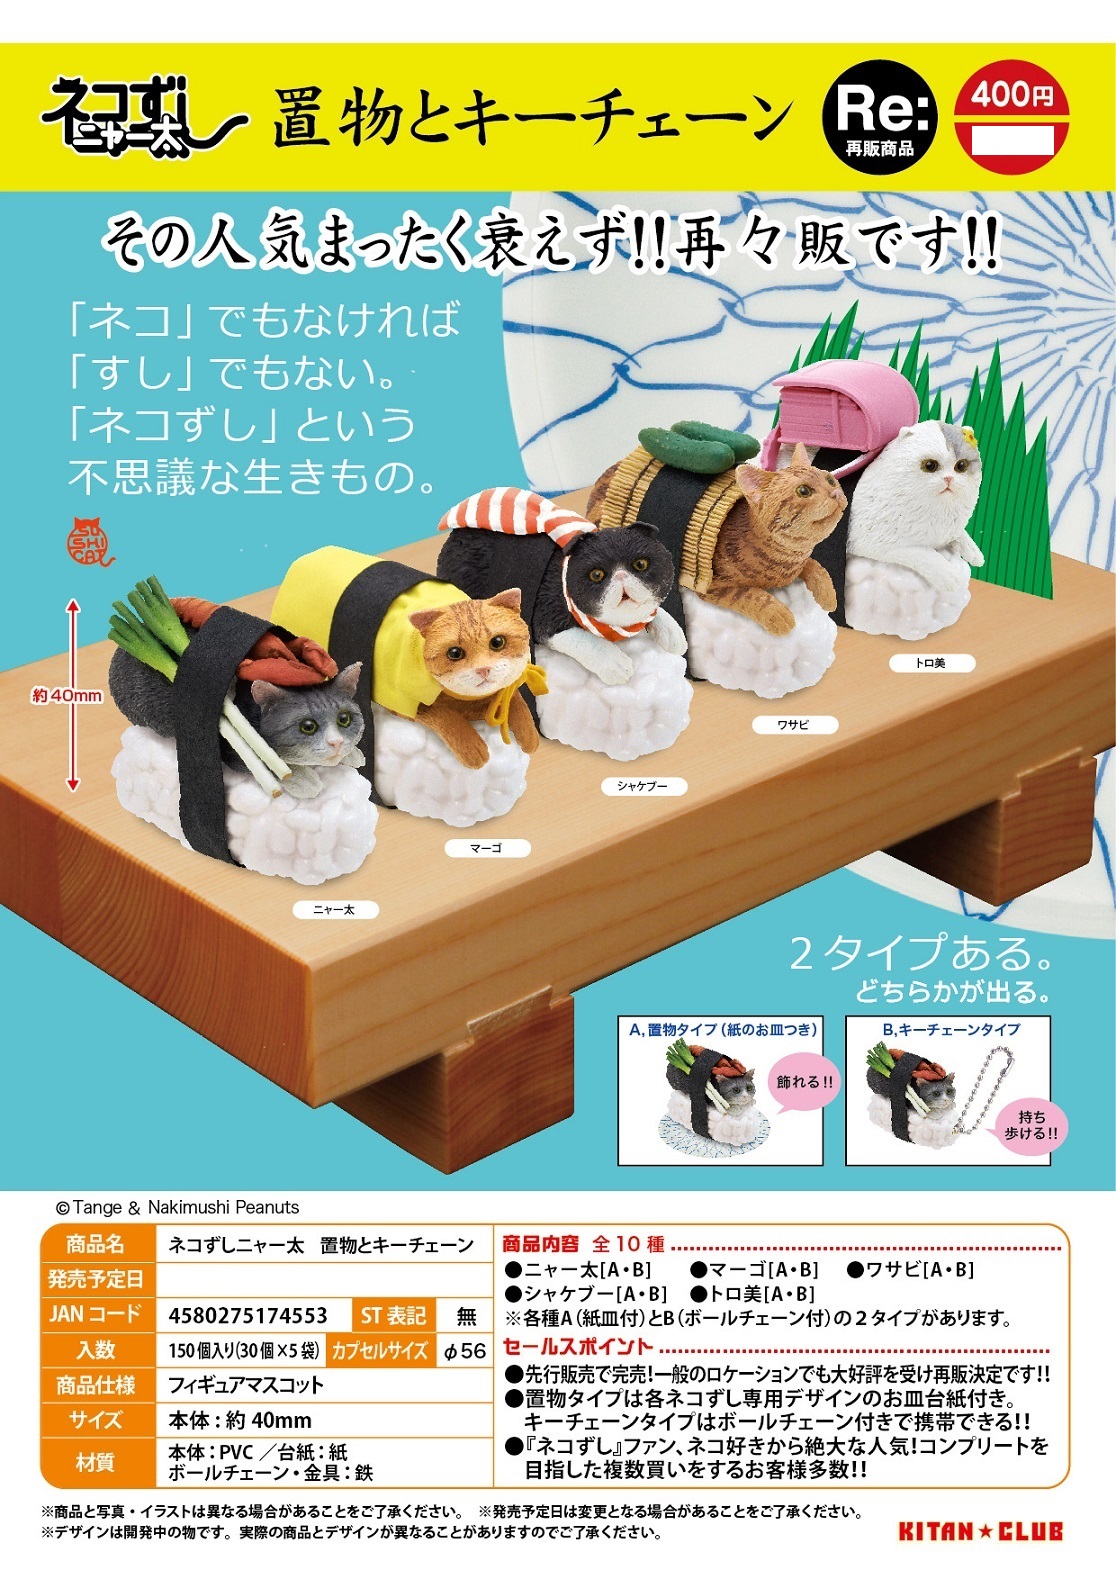 再版 400日元扭蛋 小手办&挂件 猫咪寿司 全10种 (1袋30个) 174553